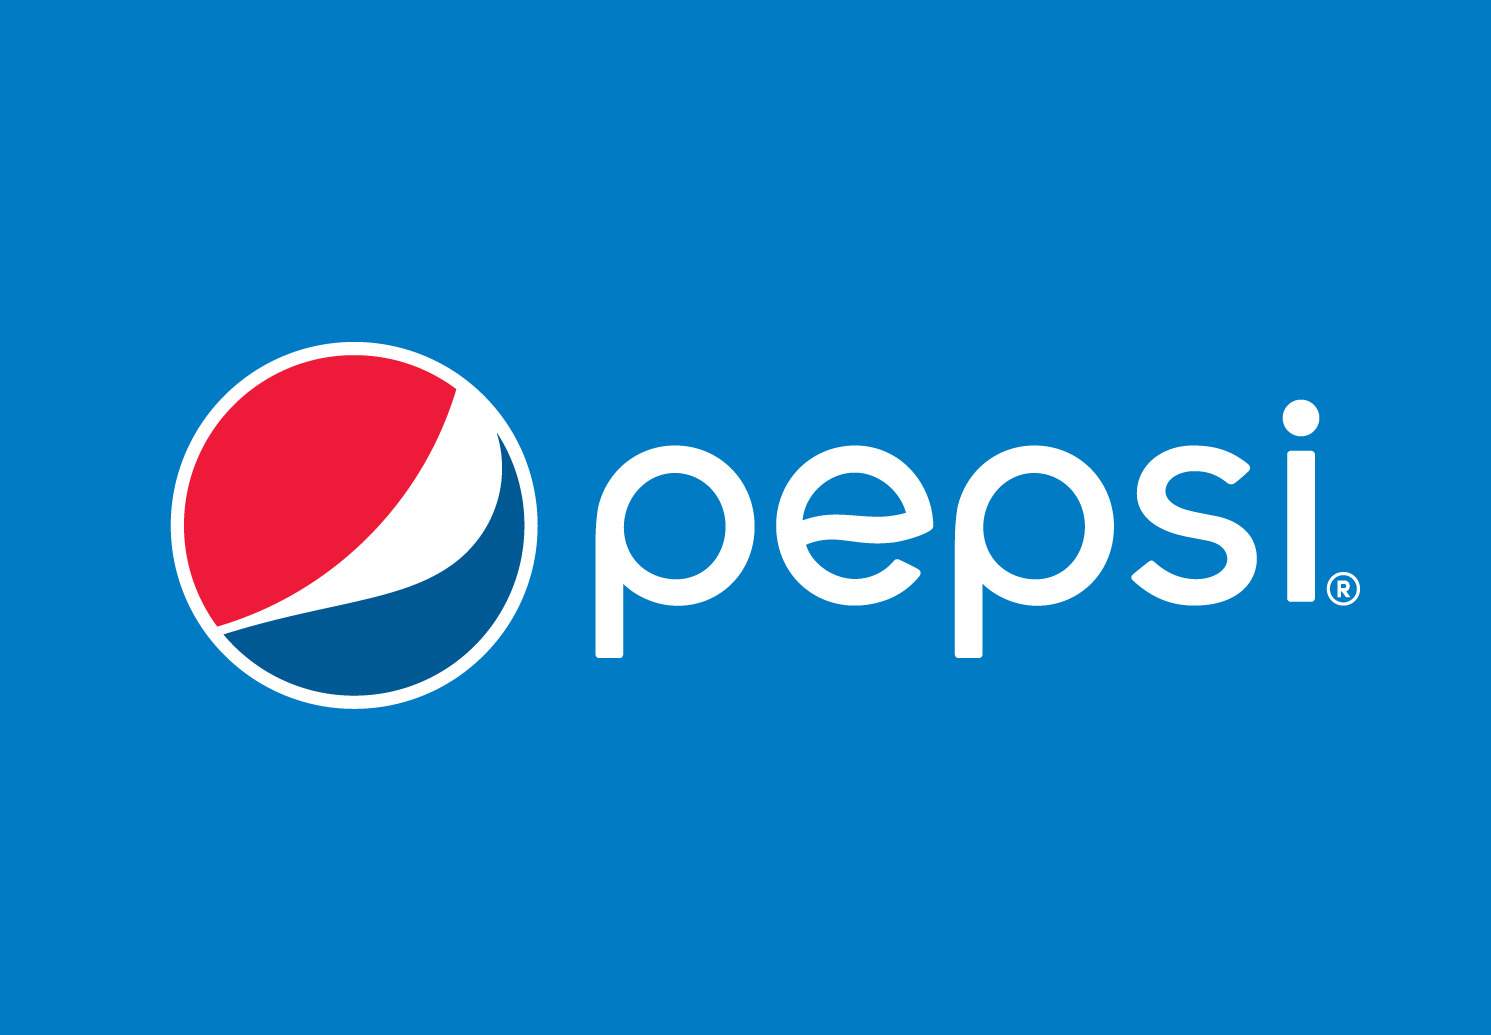 Pepsi_Markedium